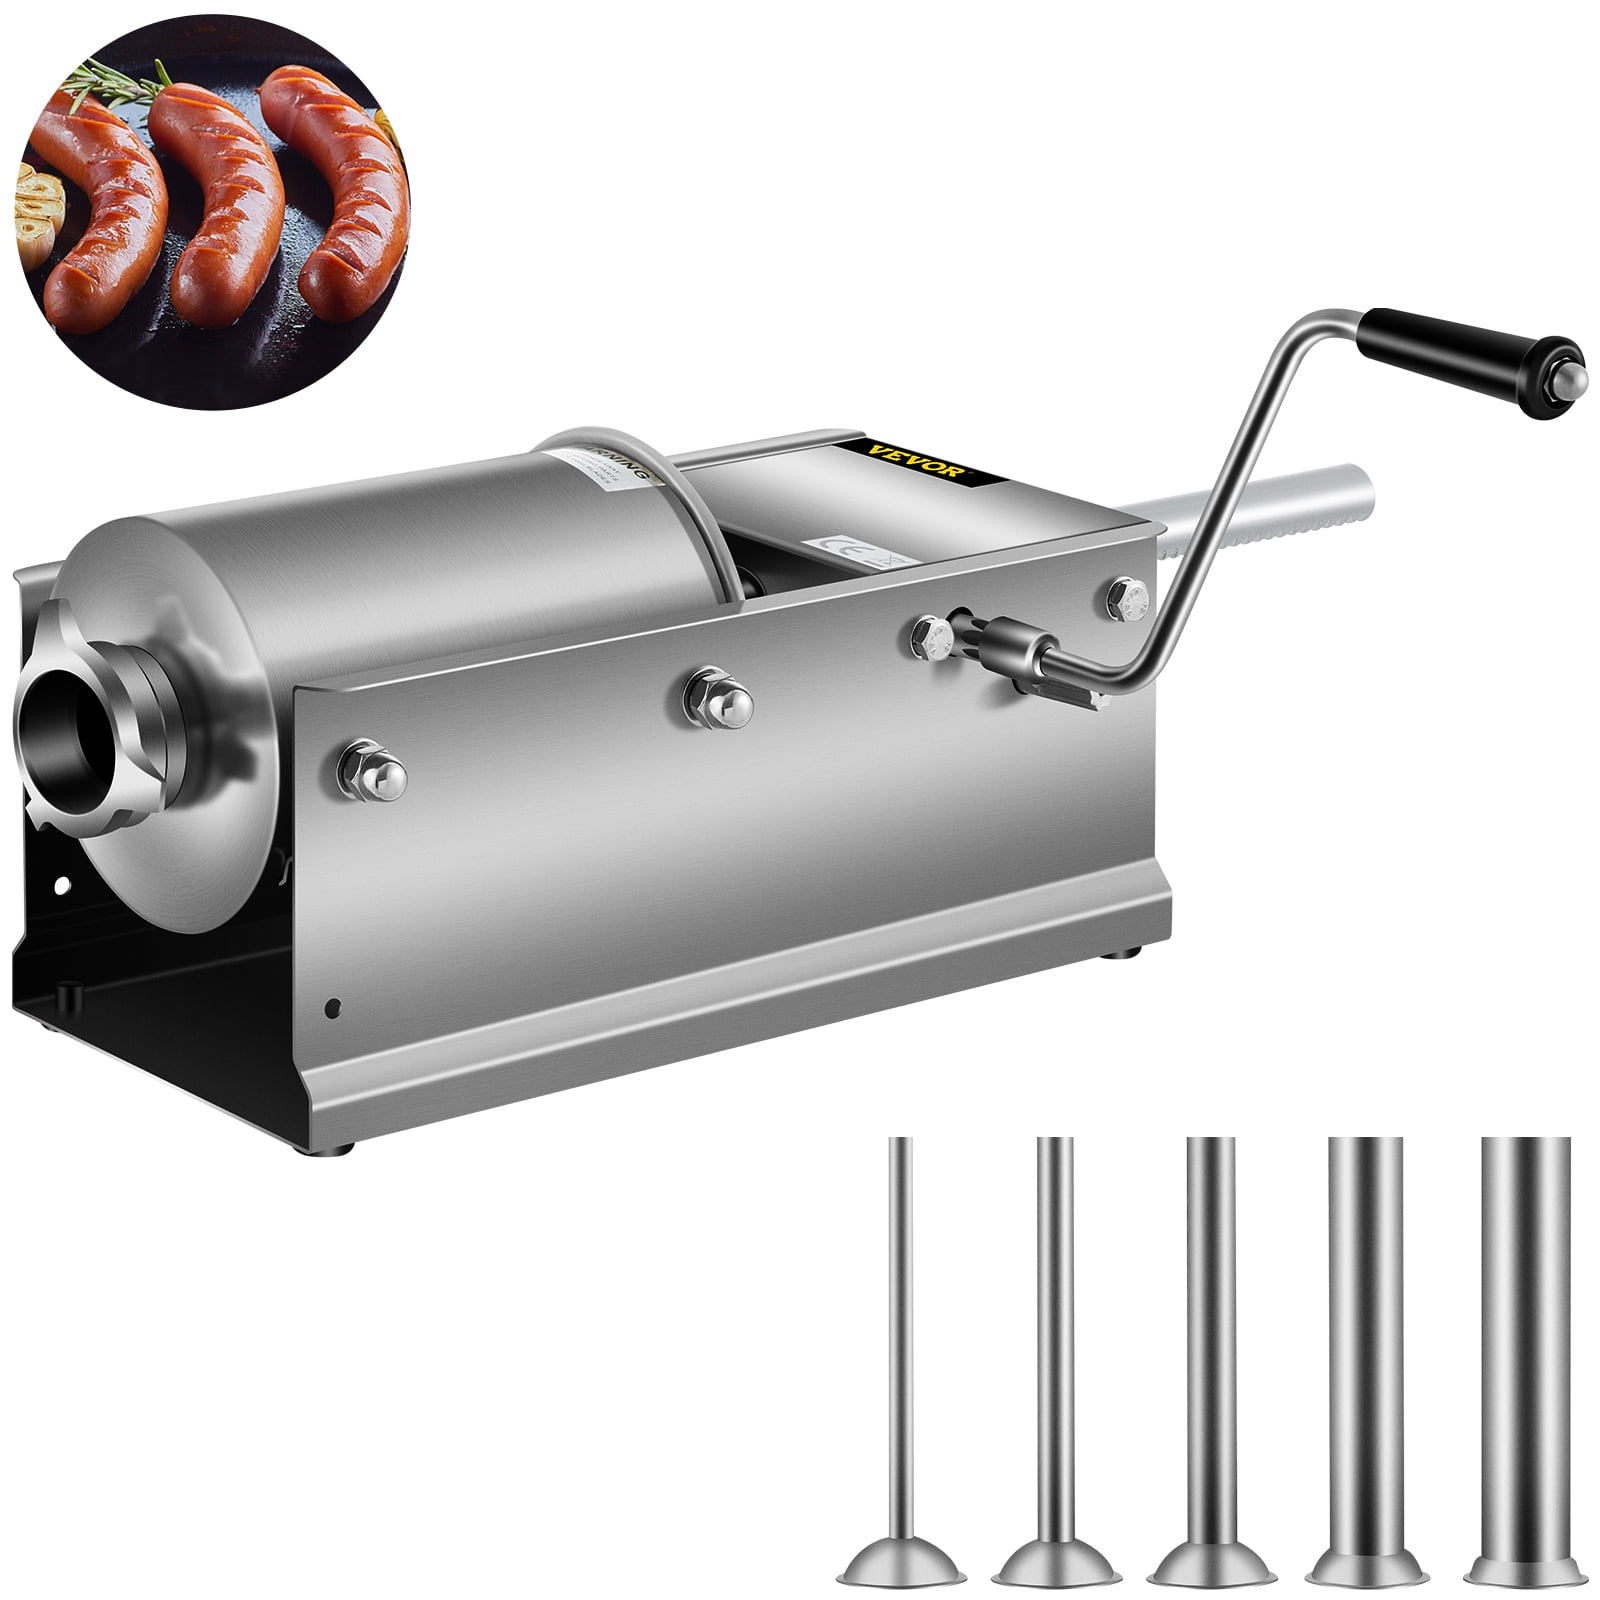 Sausage Stuffer Horizontal Kitchen Machine Aluminum Meat Stuffing Maker Kit 4 